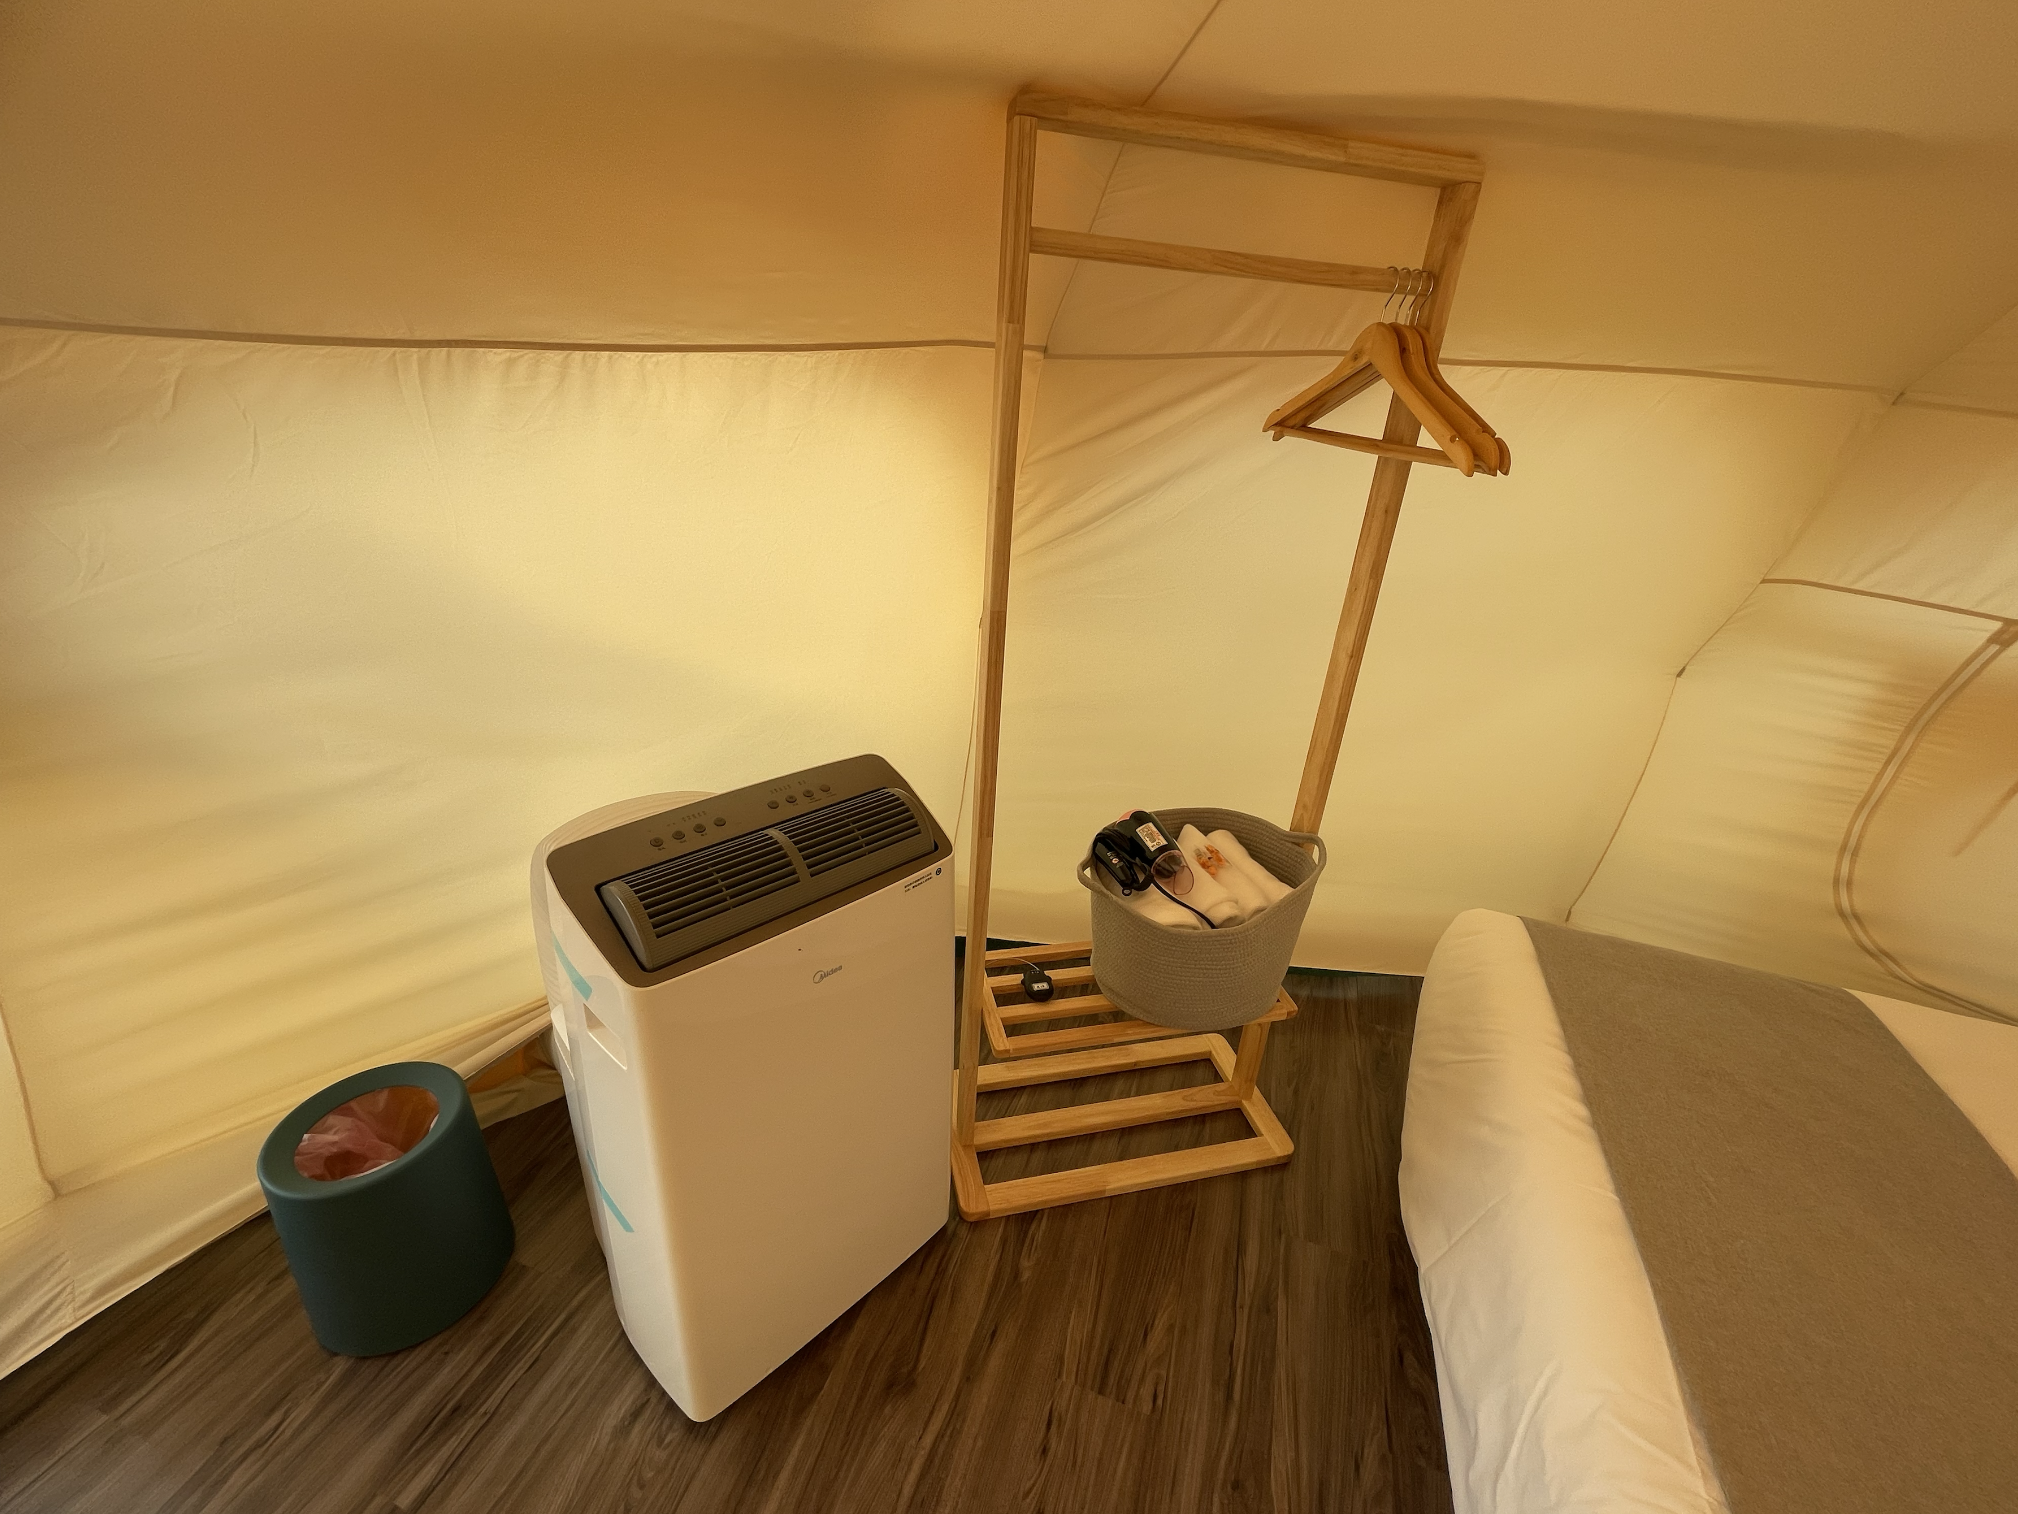 帳篷內部：冷氣機、衣架